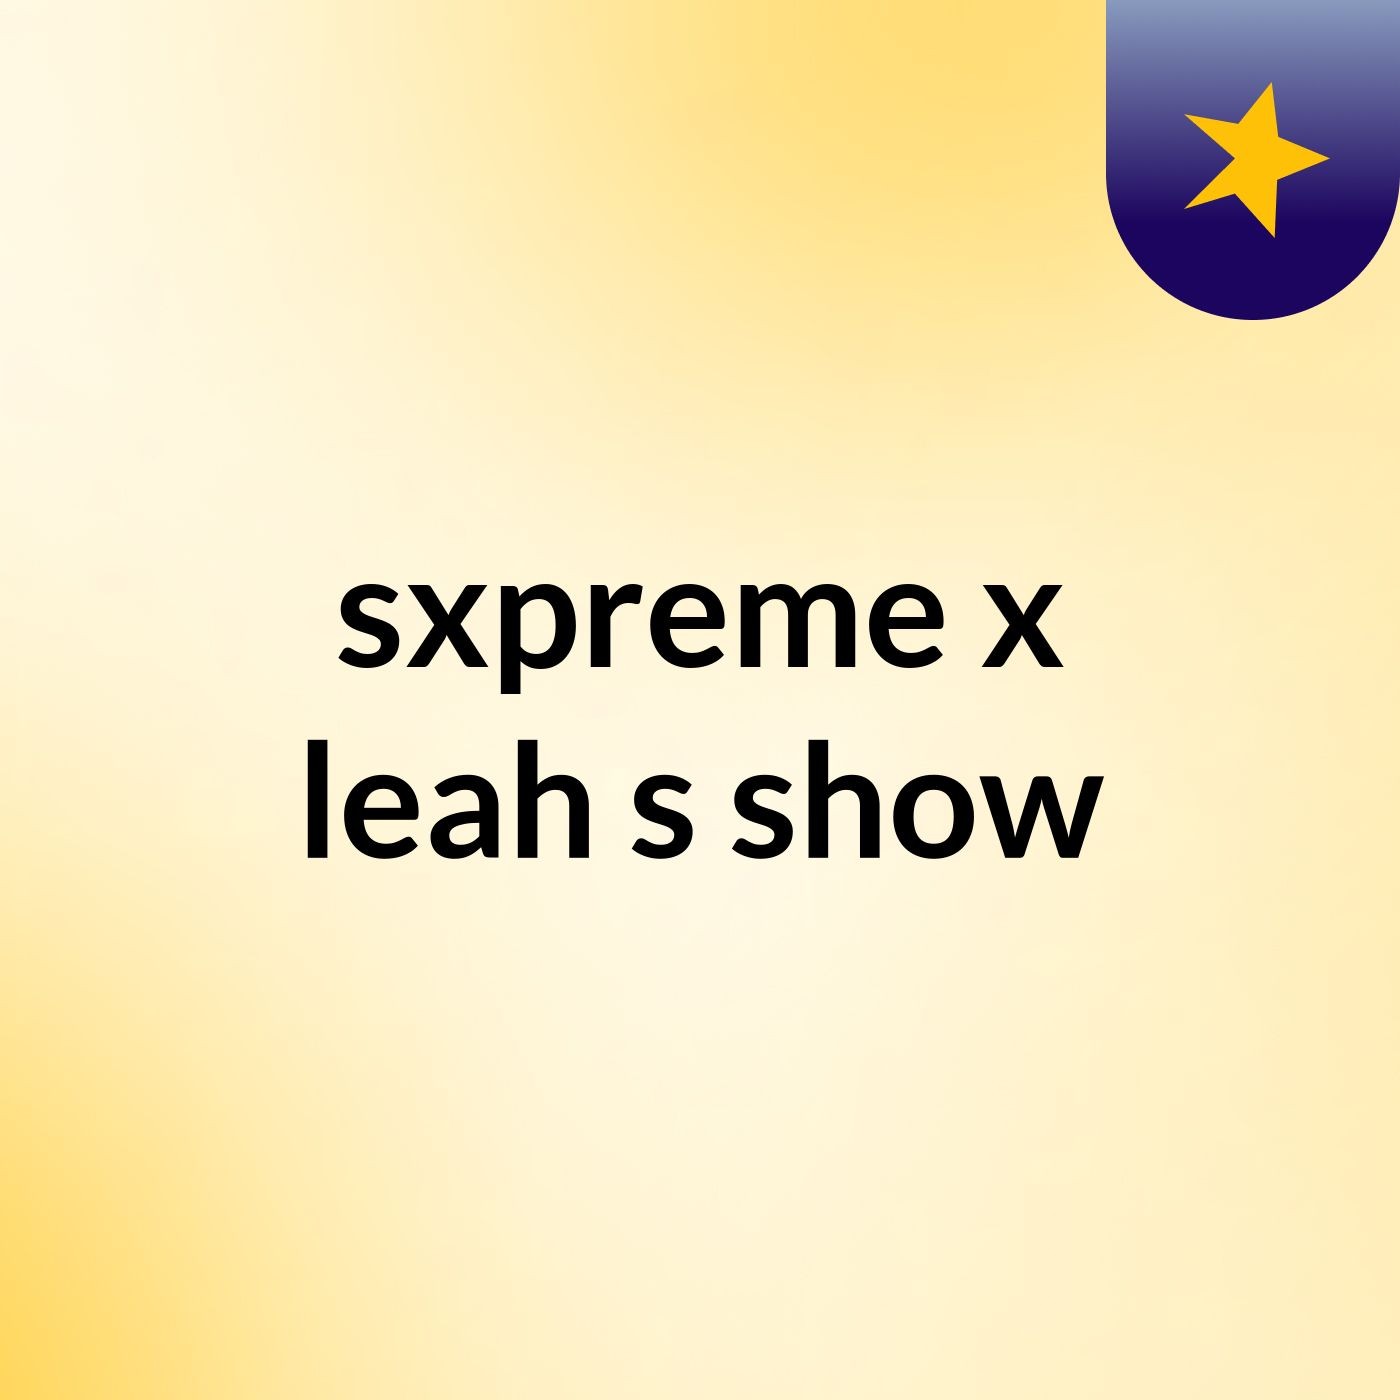 sxpreme x leah's show